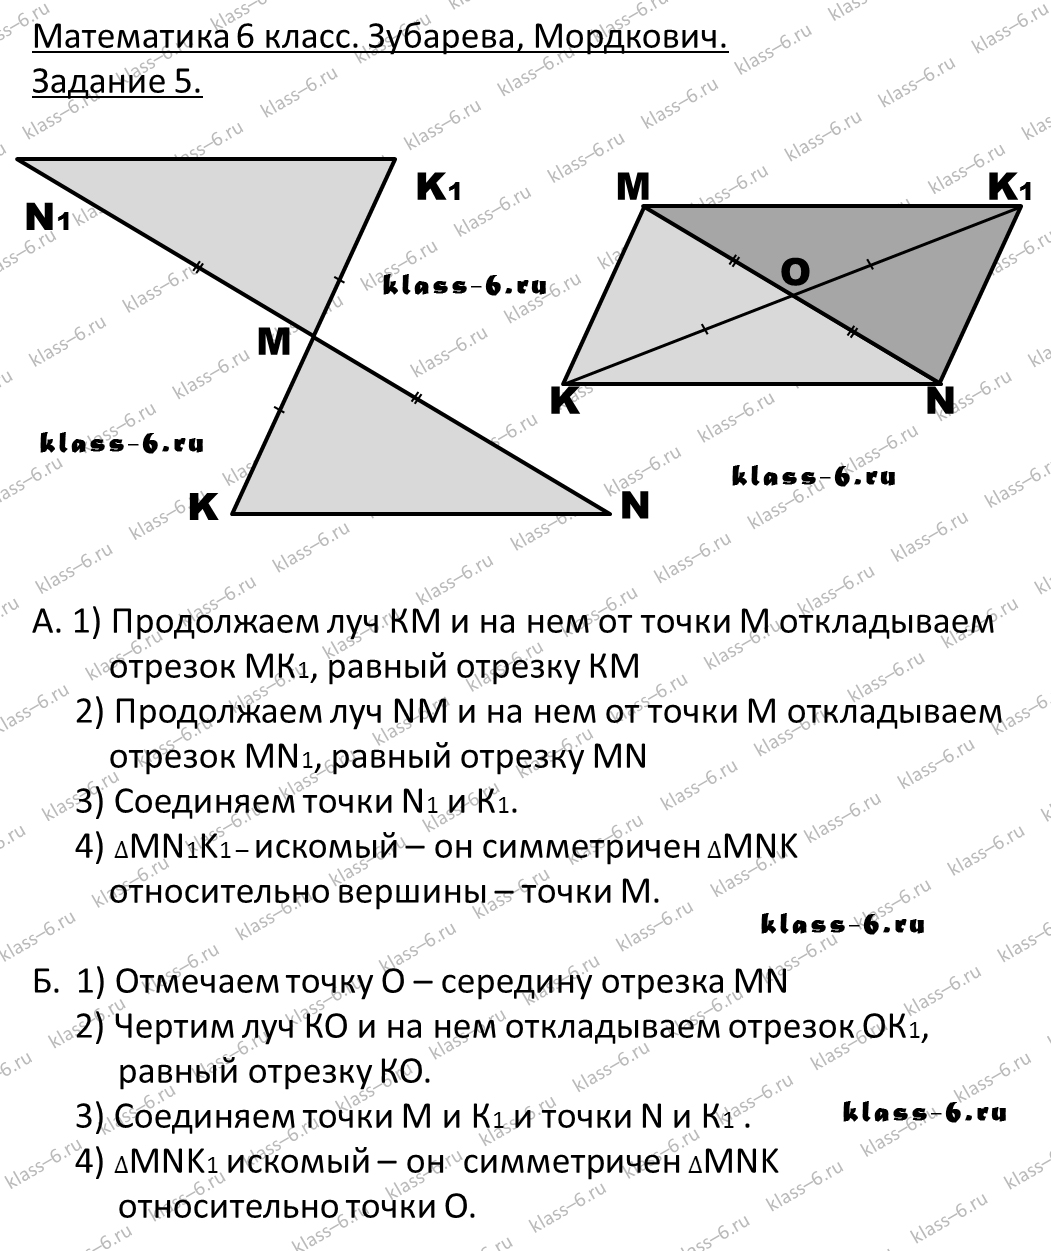 гдз математика Зубарева 6 класс ответ и подробное решение с объяснениями задачи 5